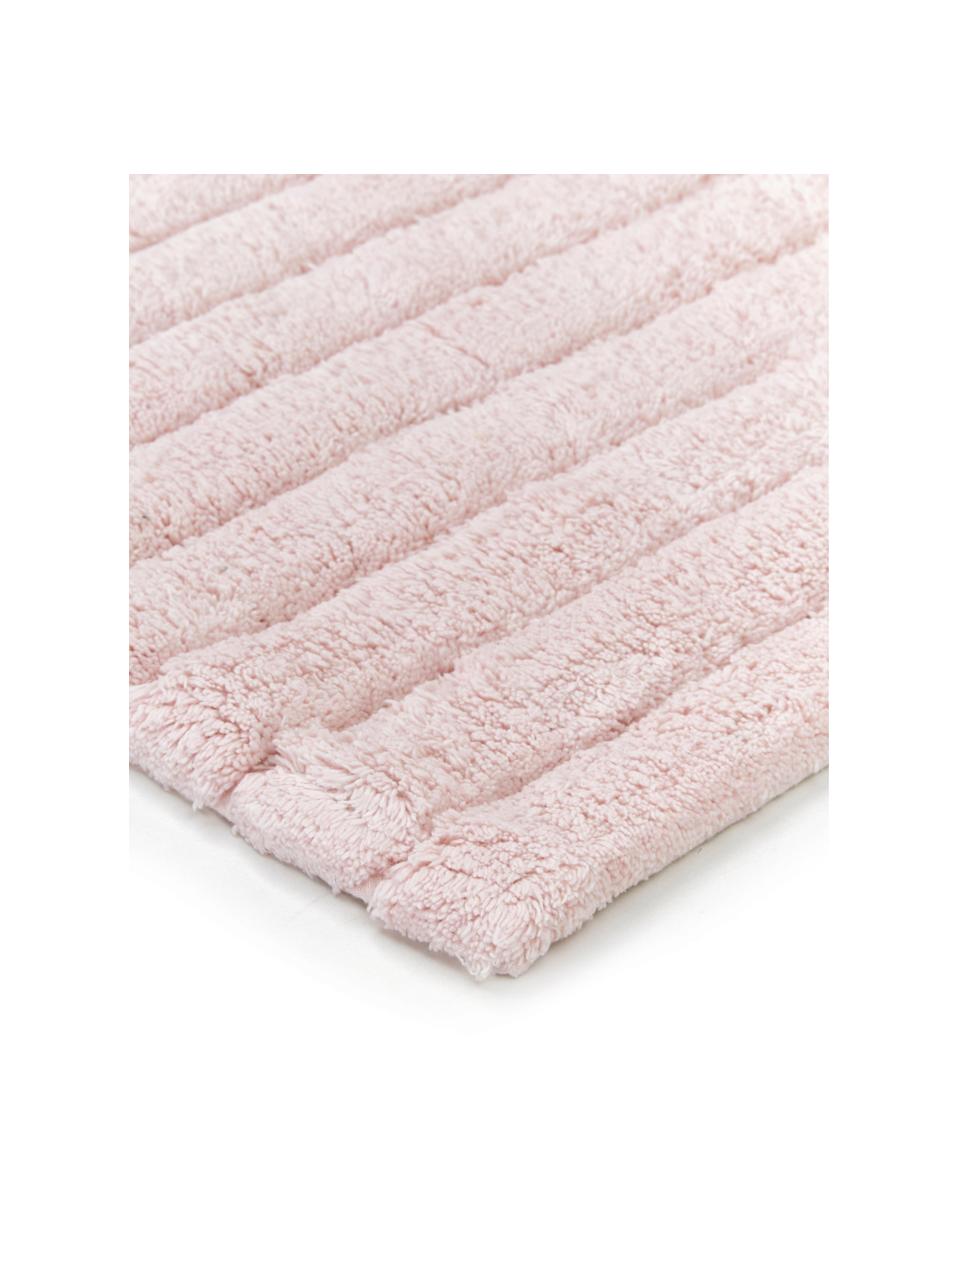 Dywanik łazienkowy Board, 100% bawełna,
Wysoka gramatura, 1900 g/m², Blady różowy, S 60 x D 90 cm